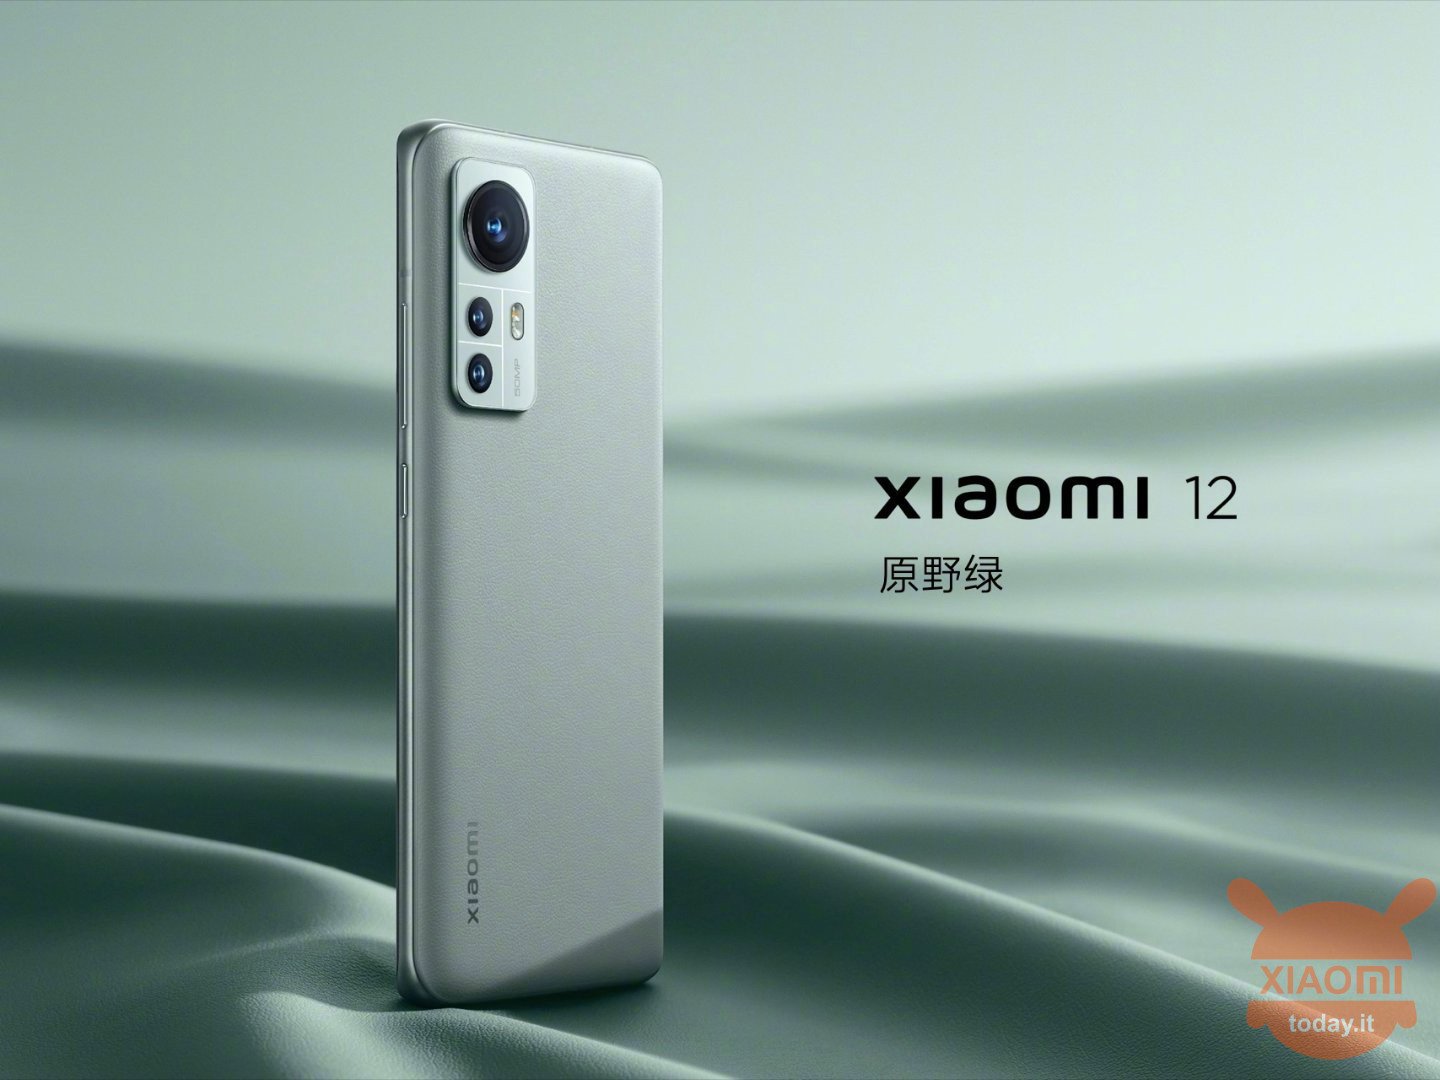 Xiaomi 12, 12 Pro e 12X ufficiali in Cina: specifiche e prezzi